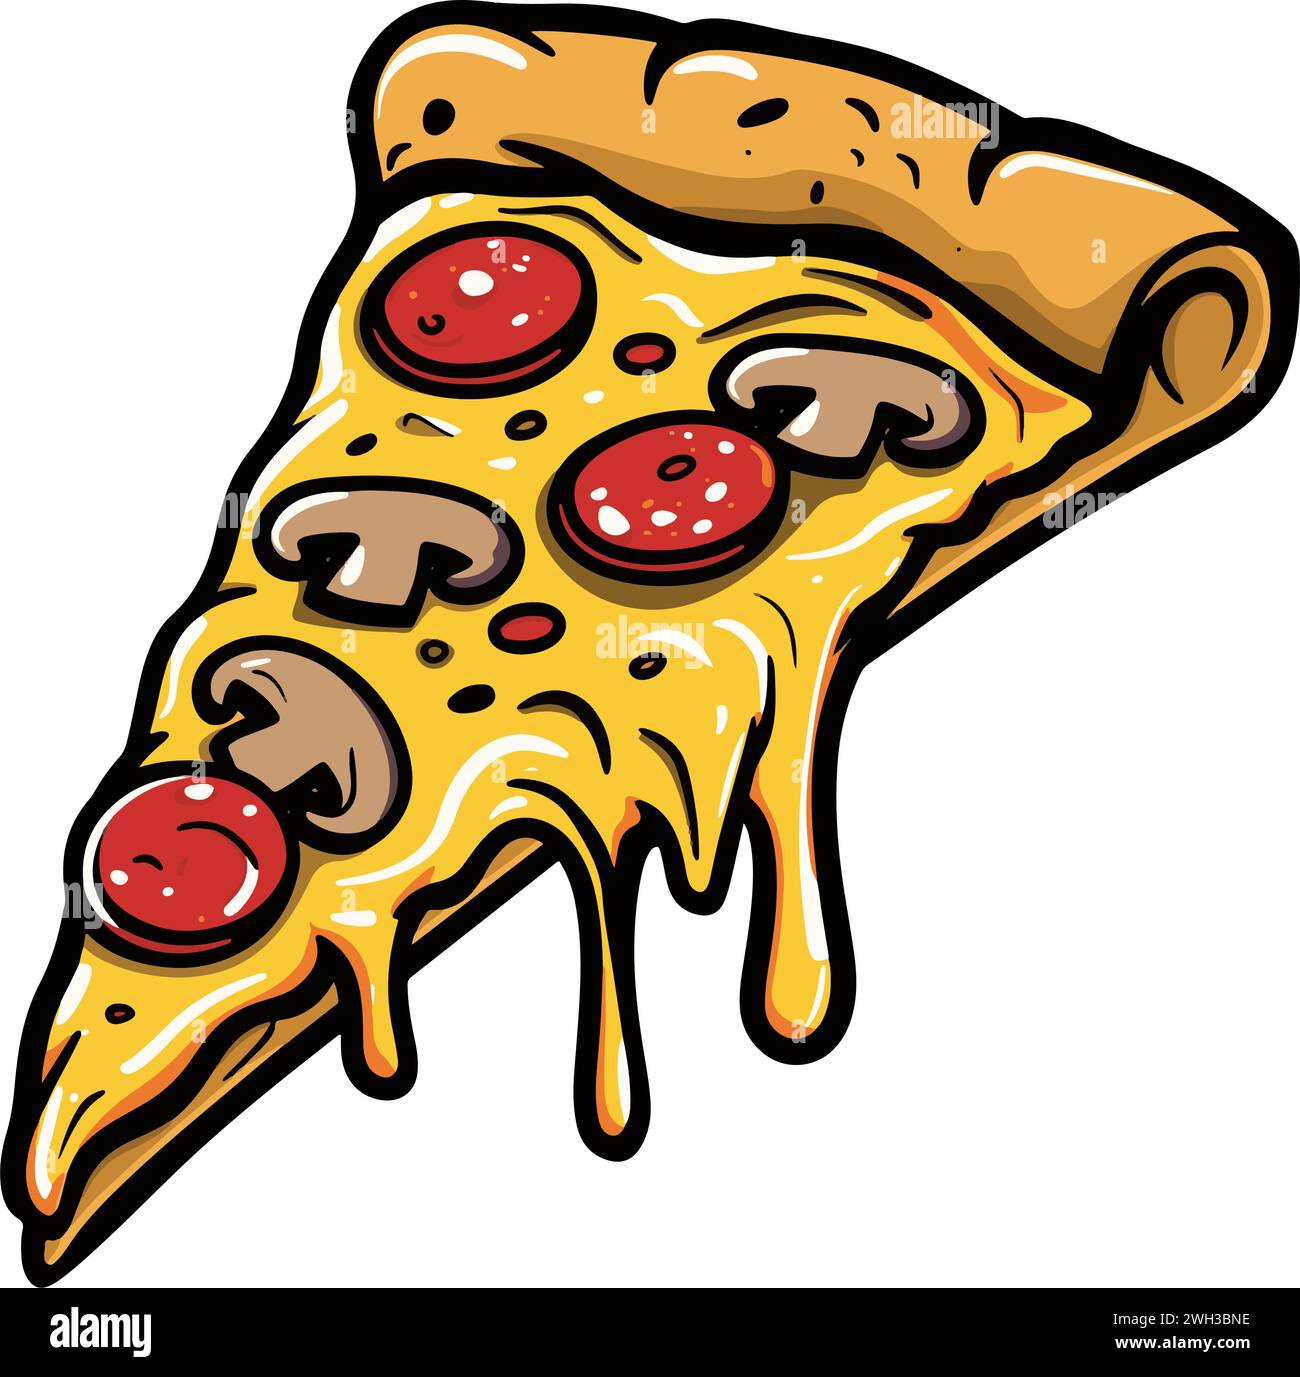 Une tranche individuelle de pizza à croûte fine avec du fromage jaune et du pepperoni égouttés et une garniture de champignons tranchés Illustration de Vecteur